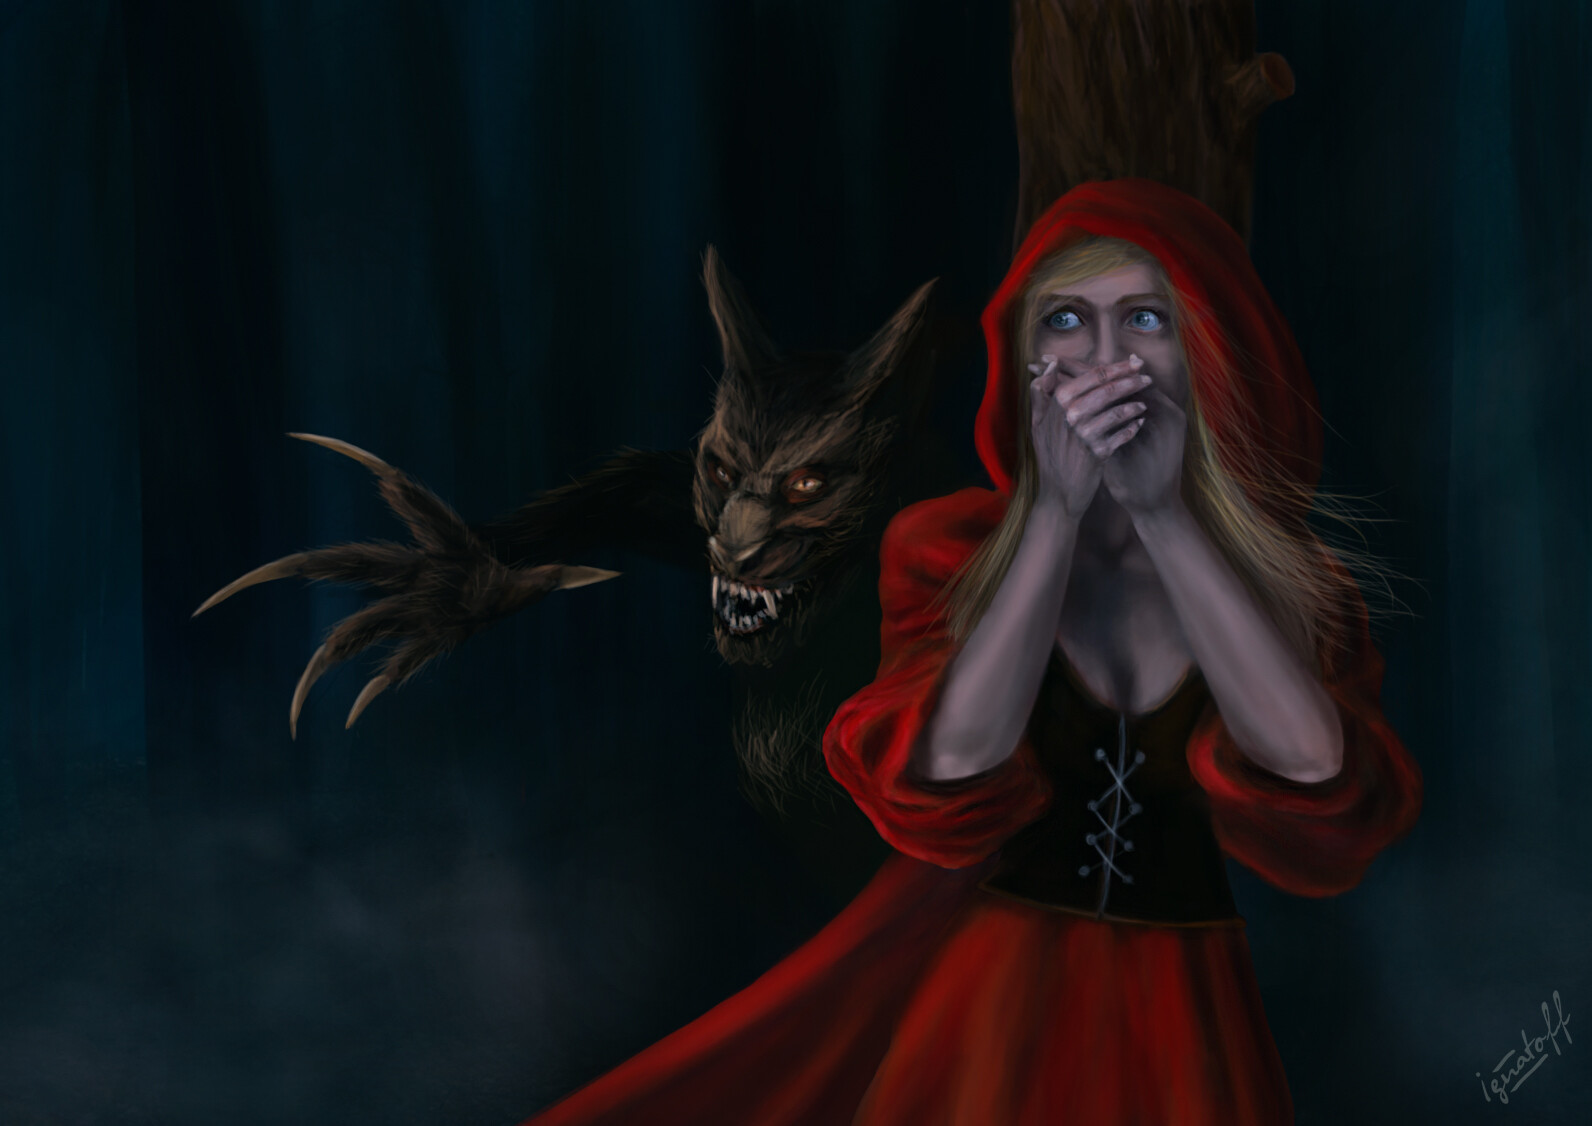 ArtStation - Red Riding Hood